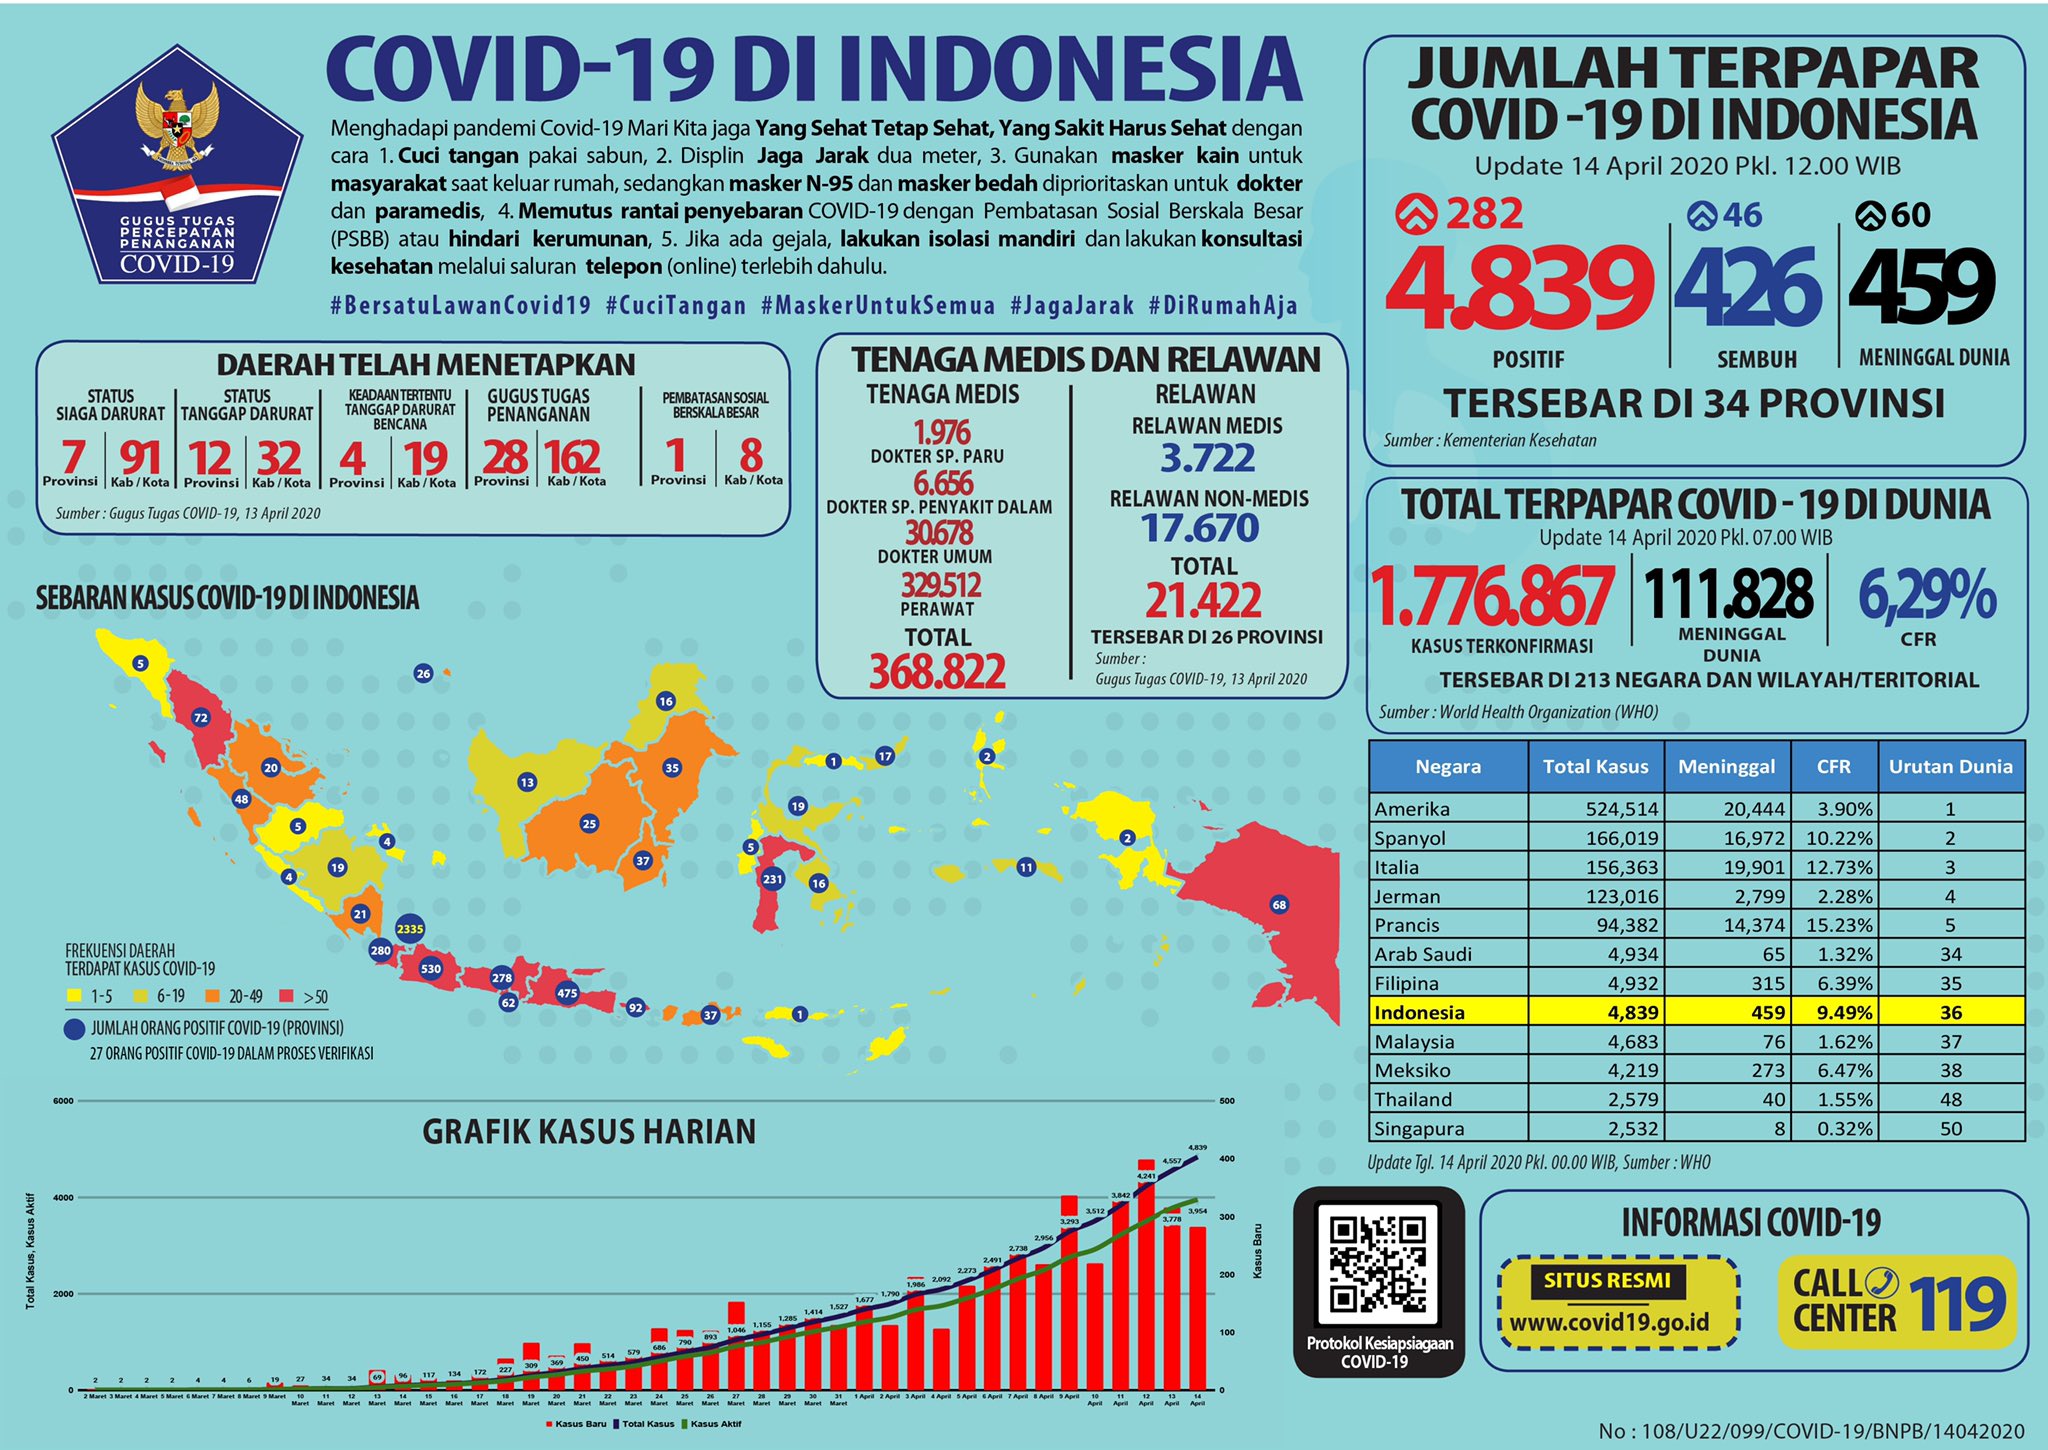 Update 14 April 2020 Infografis Covid-19: 4839 Positif, 426 Sembuh, 459 Meninggal